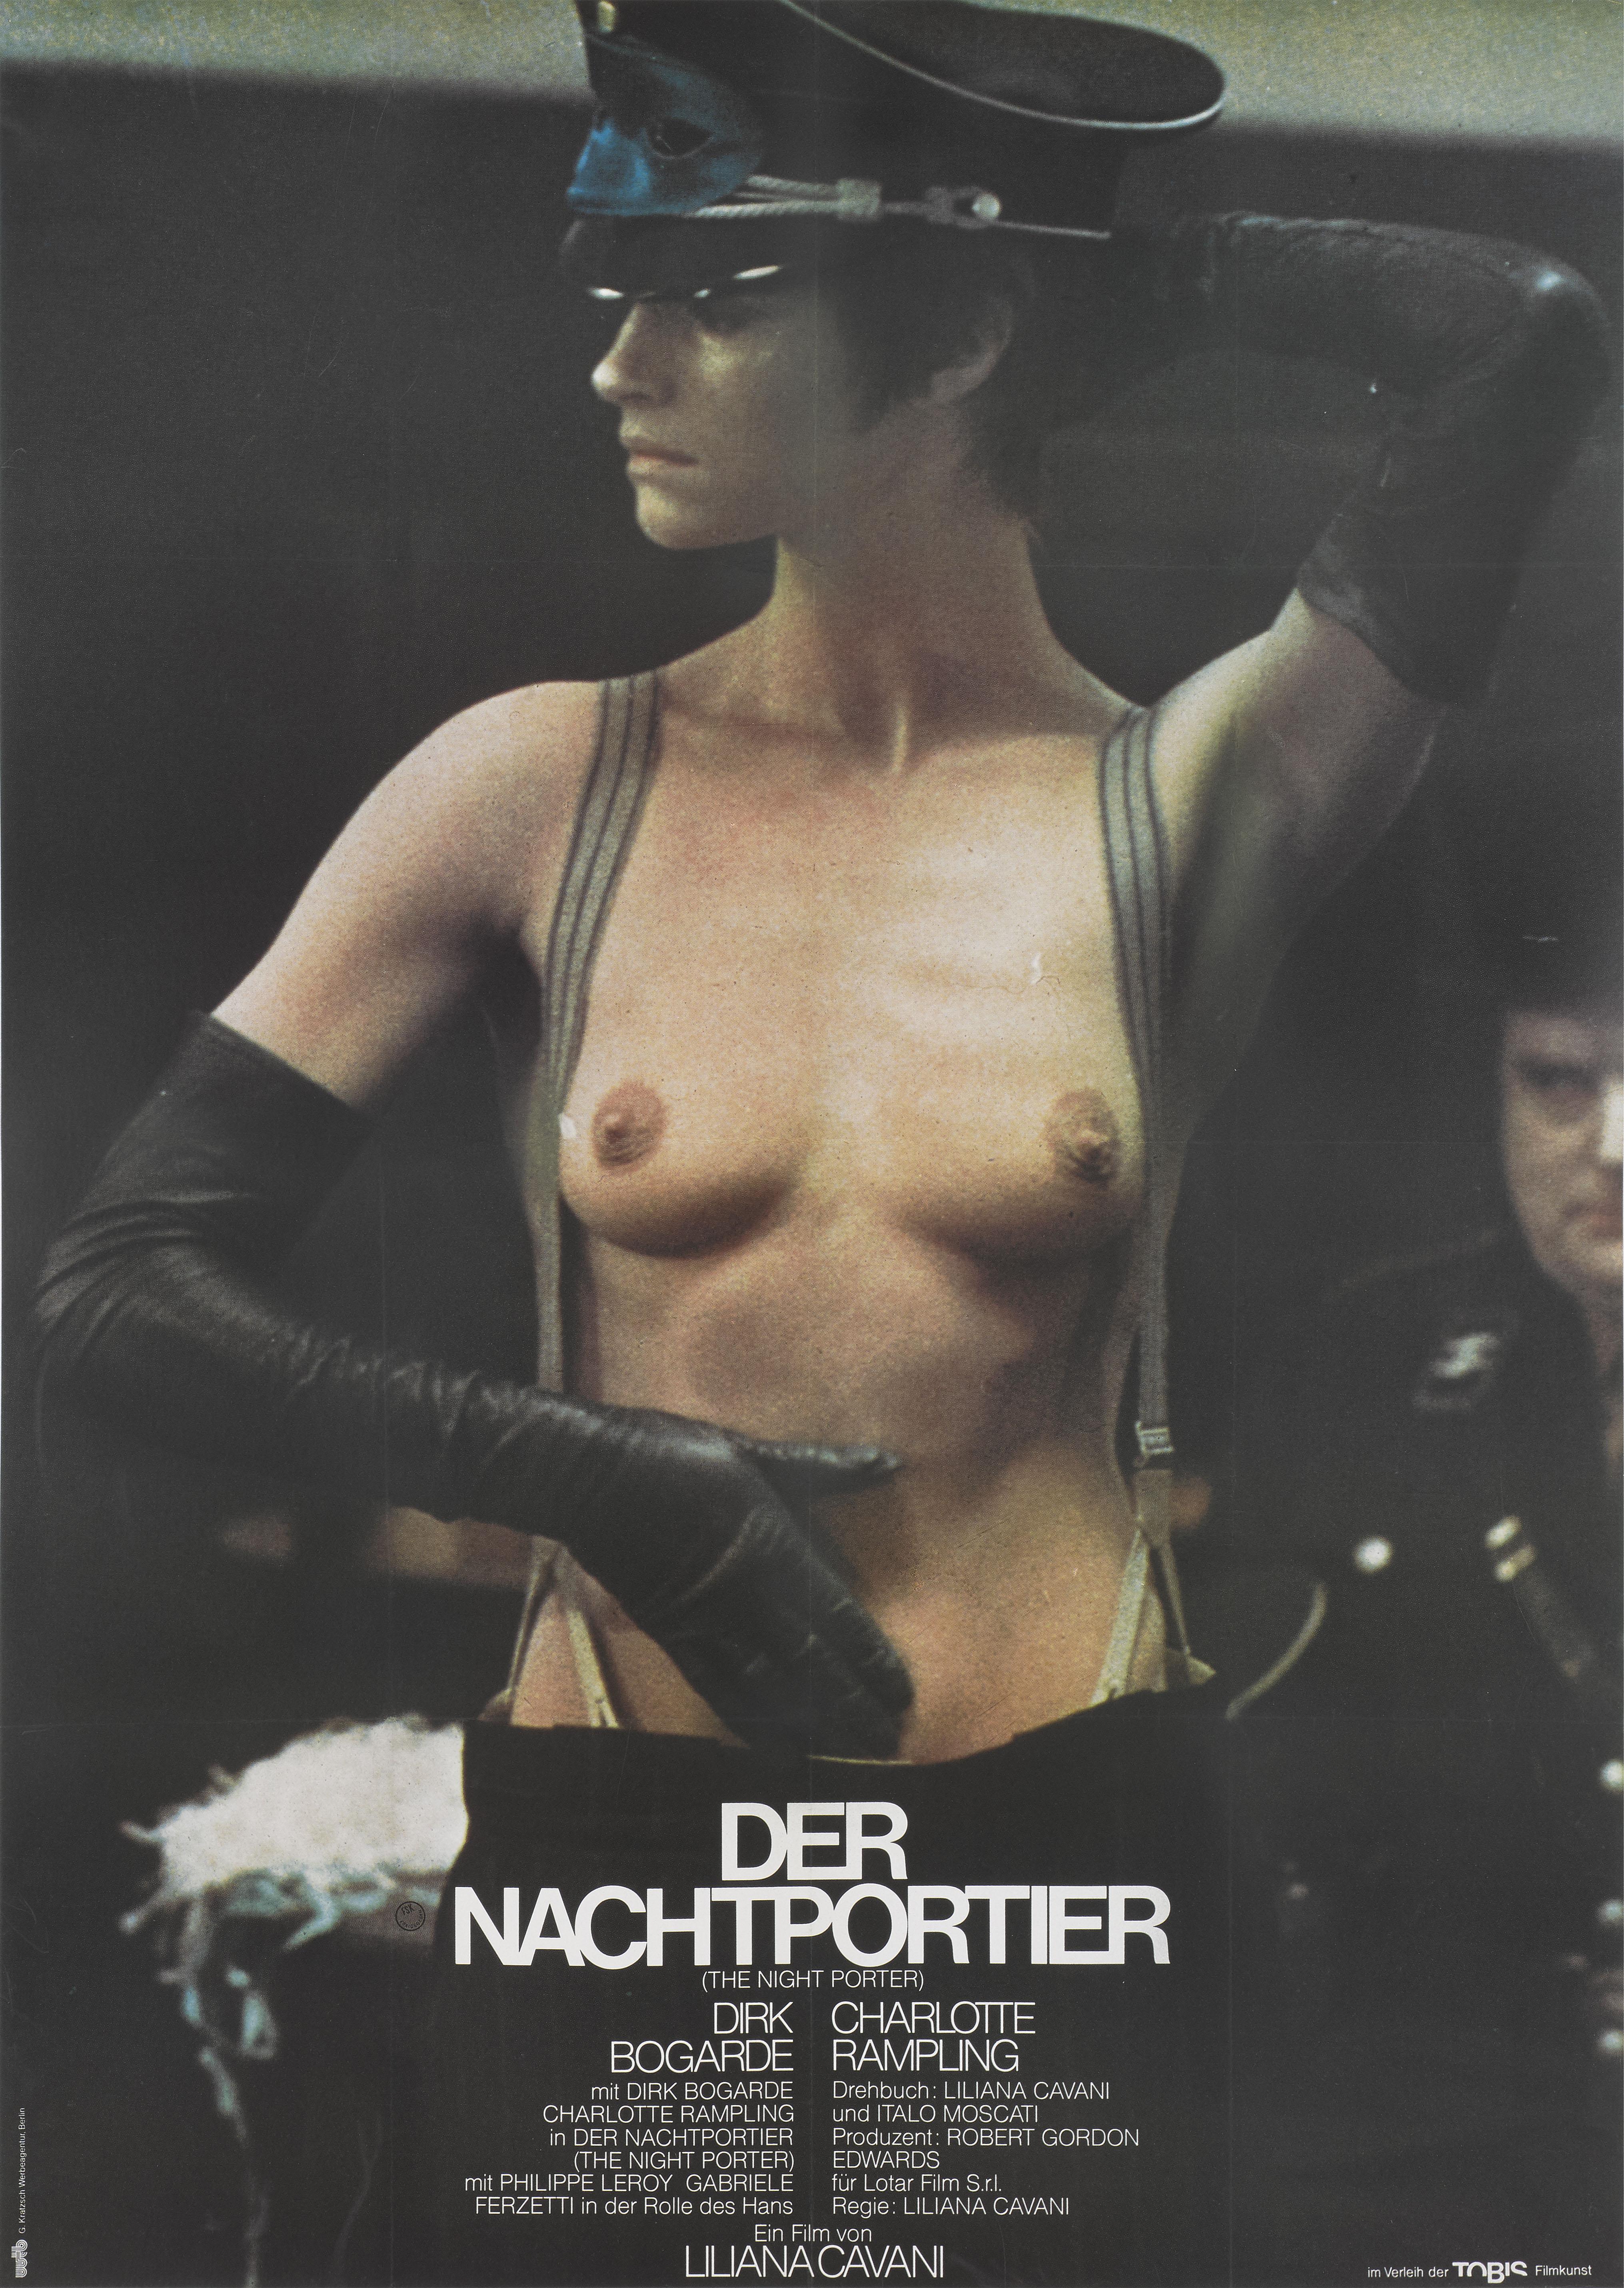 Dies ist ein seltenes großformatiges deutsches Plakat für das Kriegsdrama The Night Porter / Der Nachtportier von 1974.
Bei diesem Film führte Liliana Cavani Regie, in den Hauptrollen spielten Dirk Bogarde und Charlotte Rampling. Dieser Film wurde